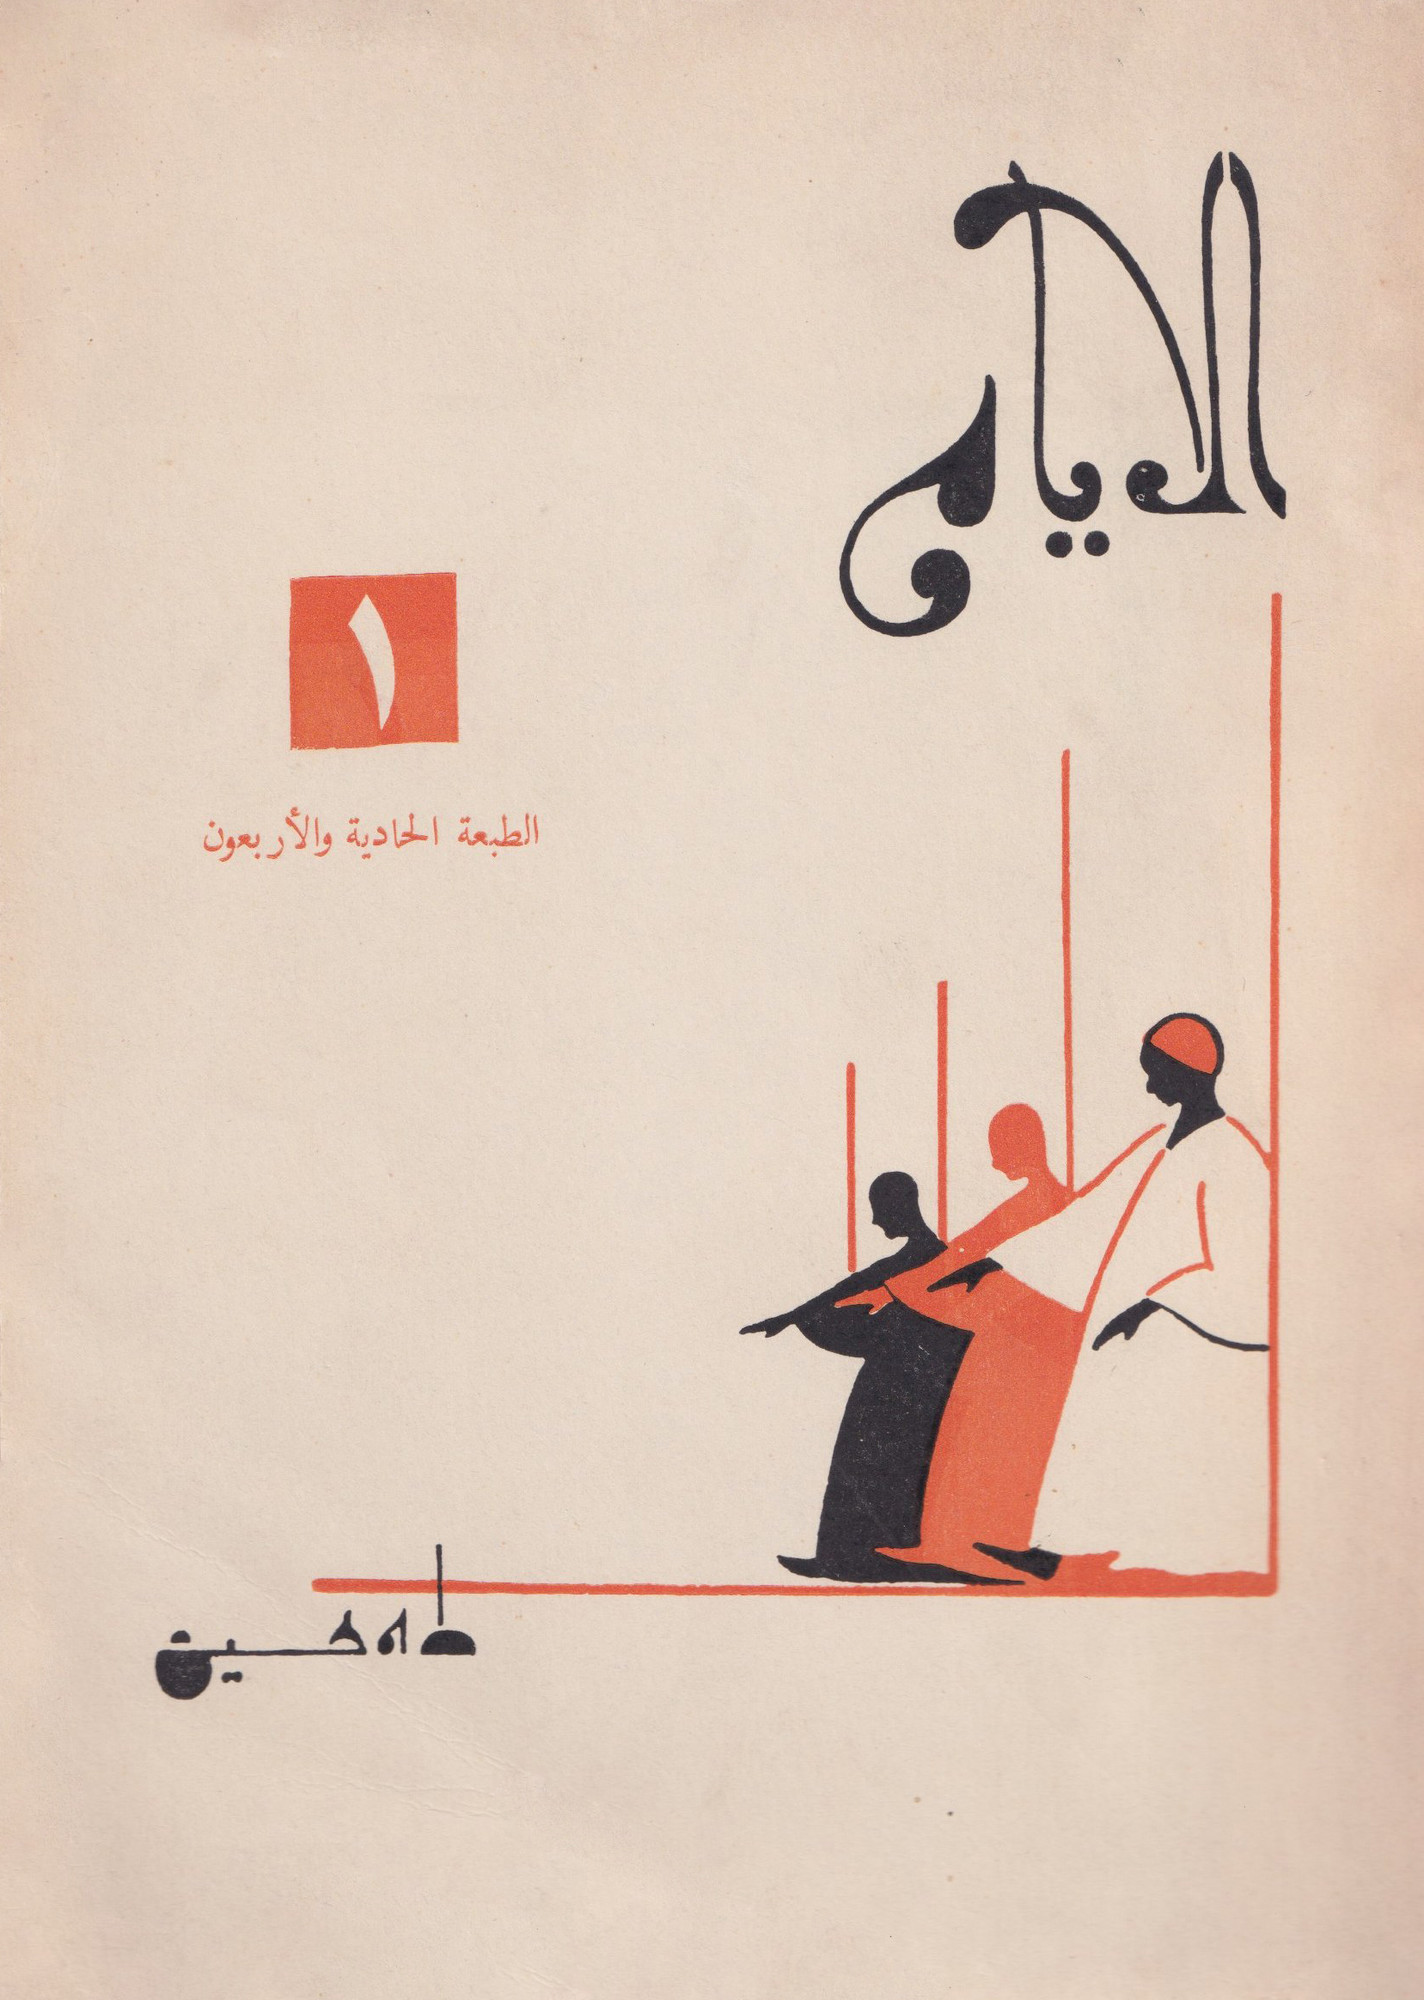 “I giorni” by Taha Hussien. Designer: Hussien Bicar, 1942